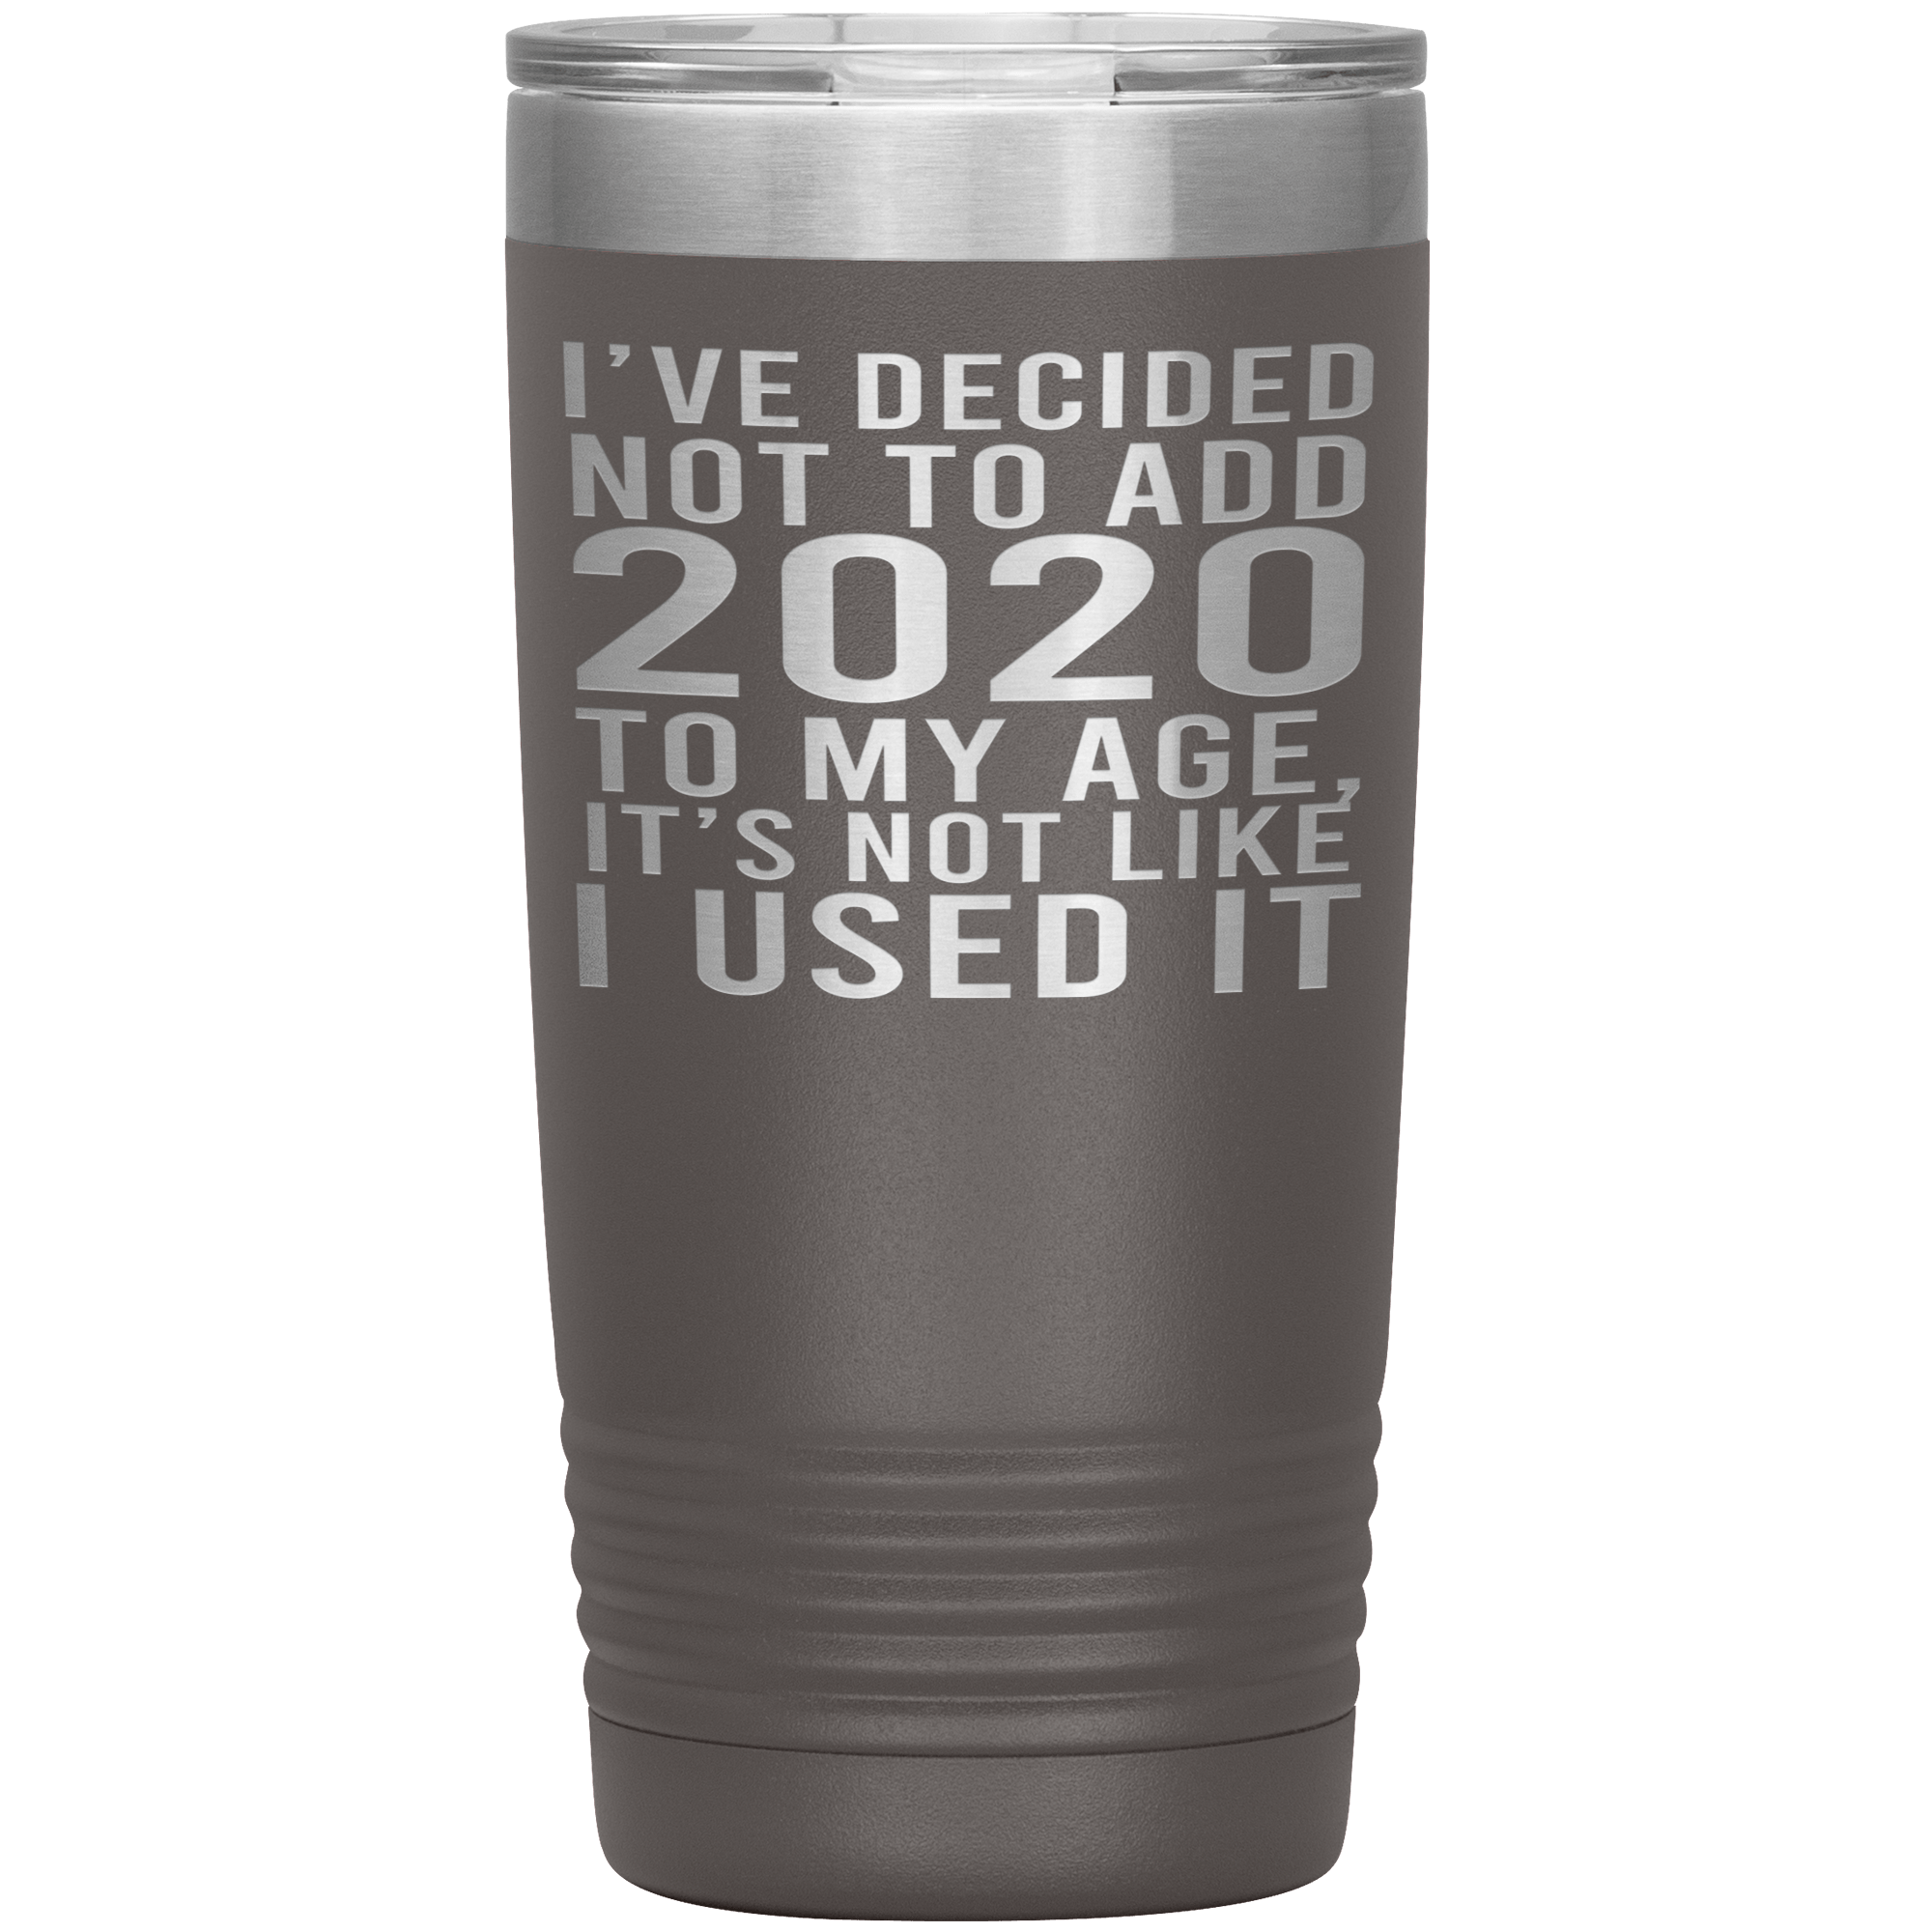 I HAVEN'T USED 2020 SO I WON'T ADD IT TO MY AGE - TUMBLER